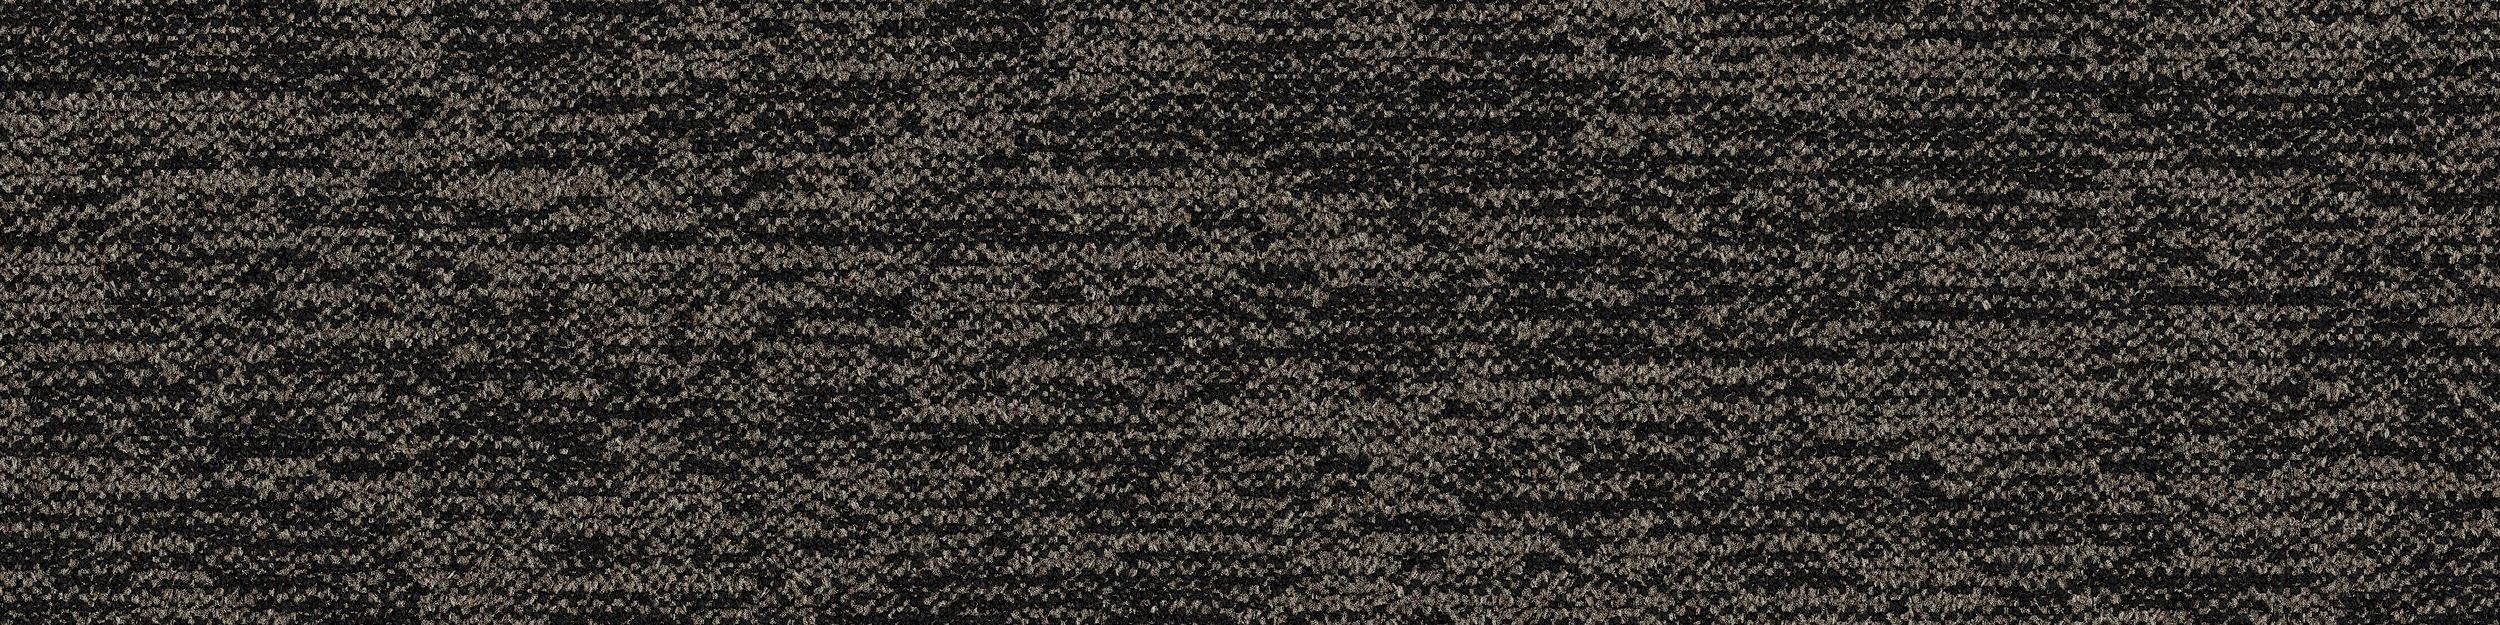 DL908 Carpet Tile In Basalt imagen número 2